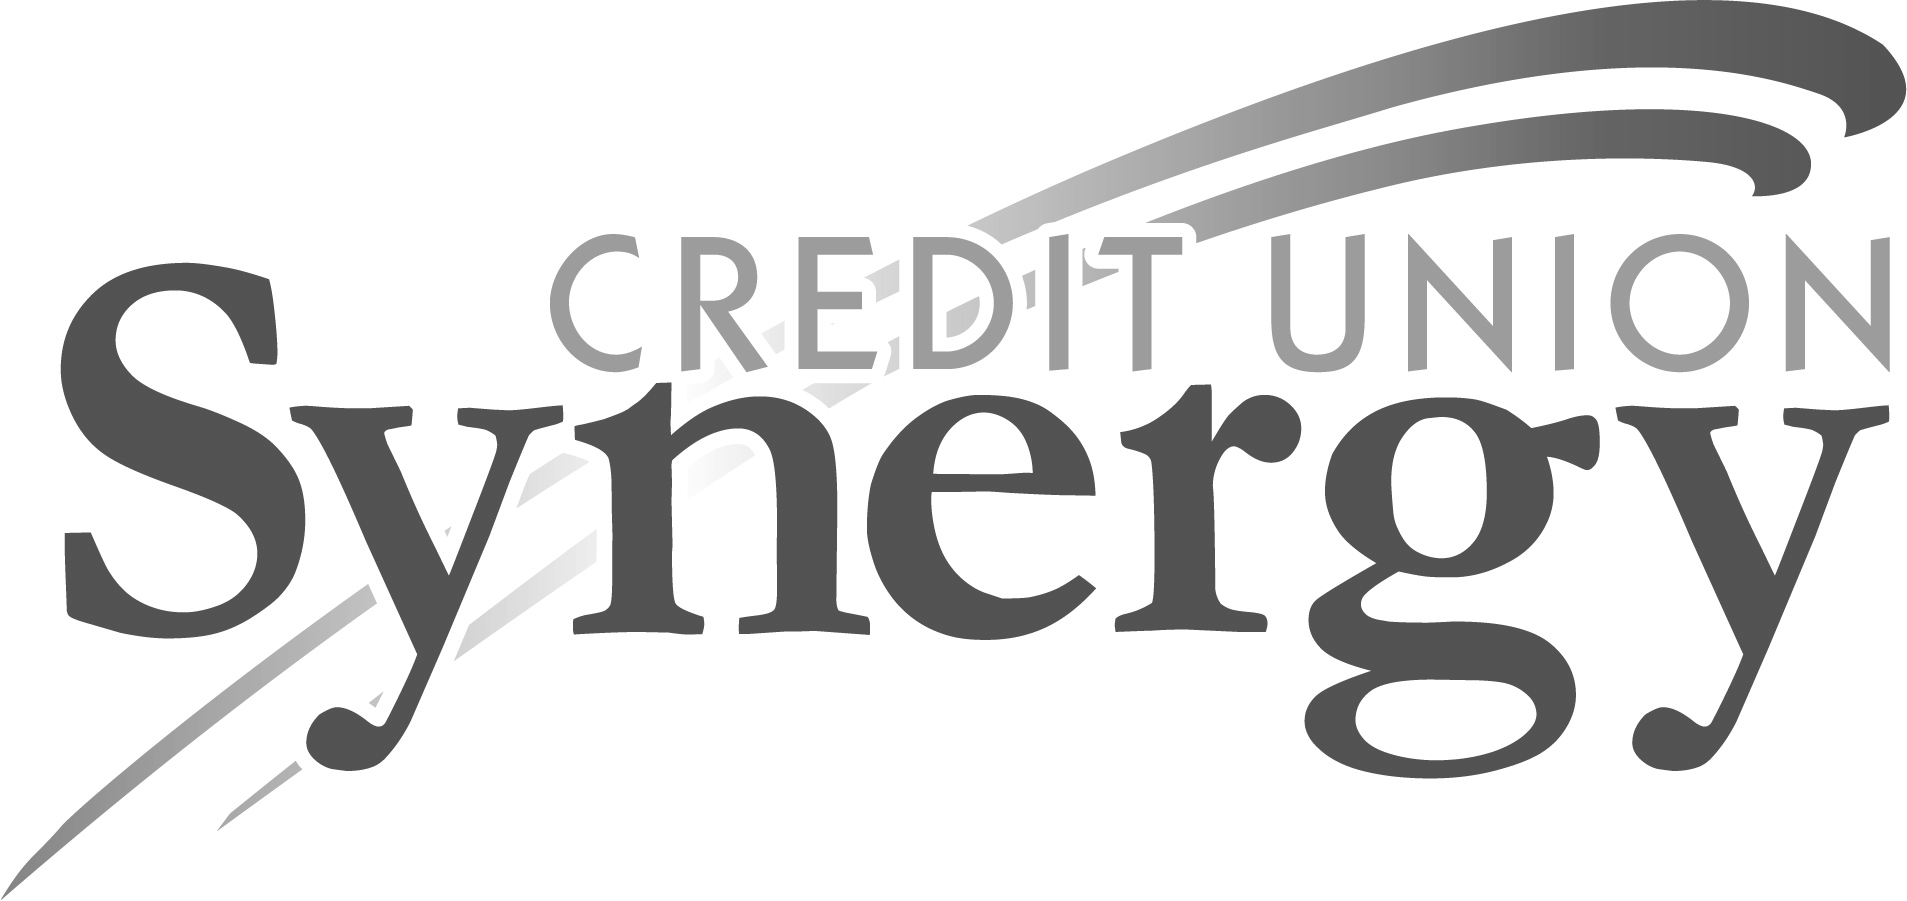 Synergy Credit Union Logo